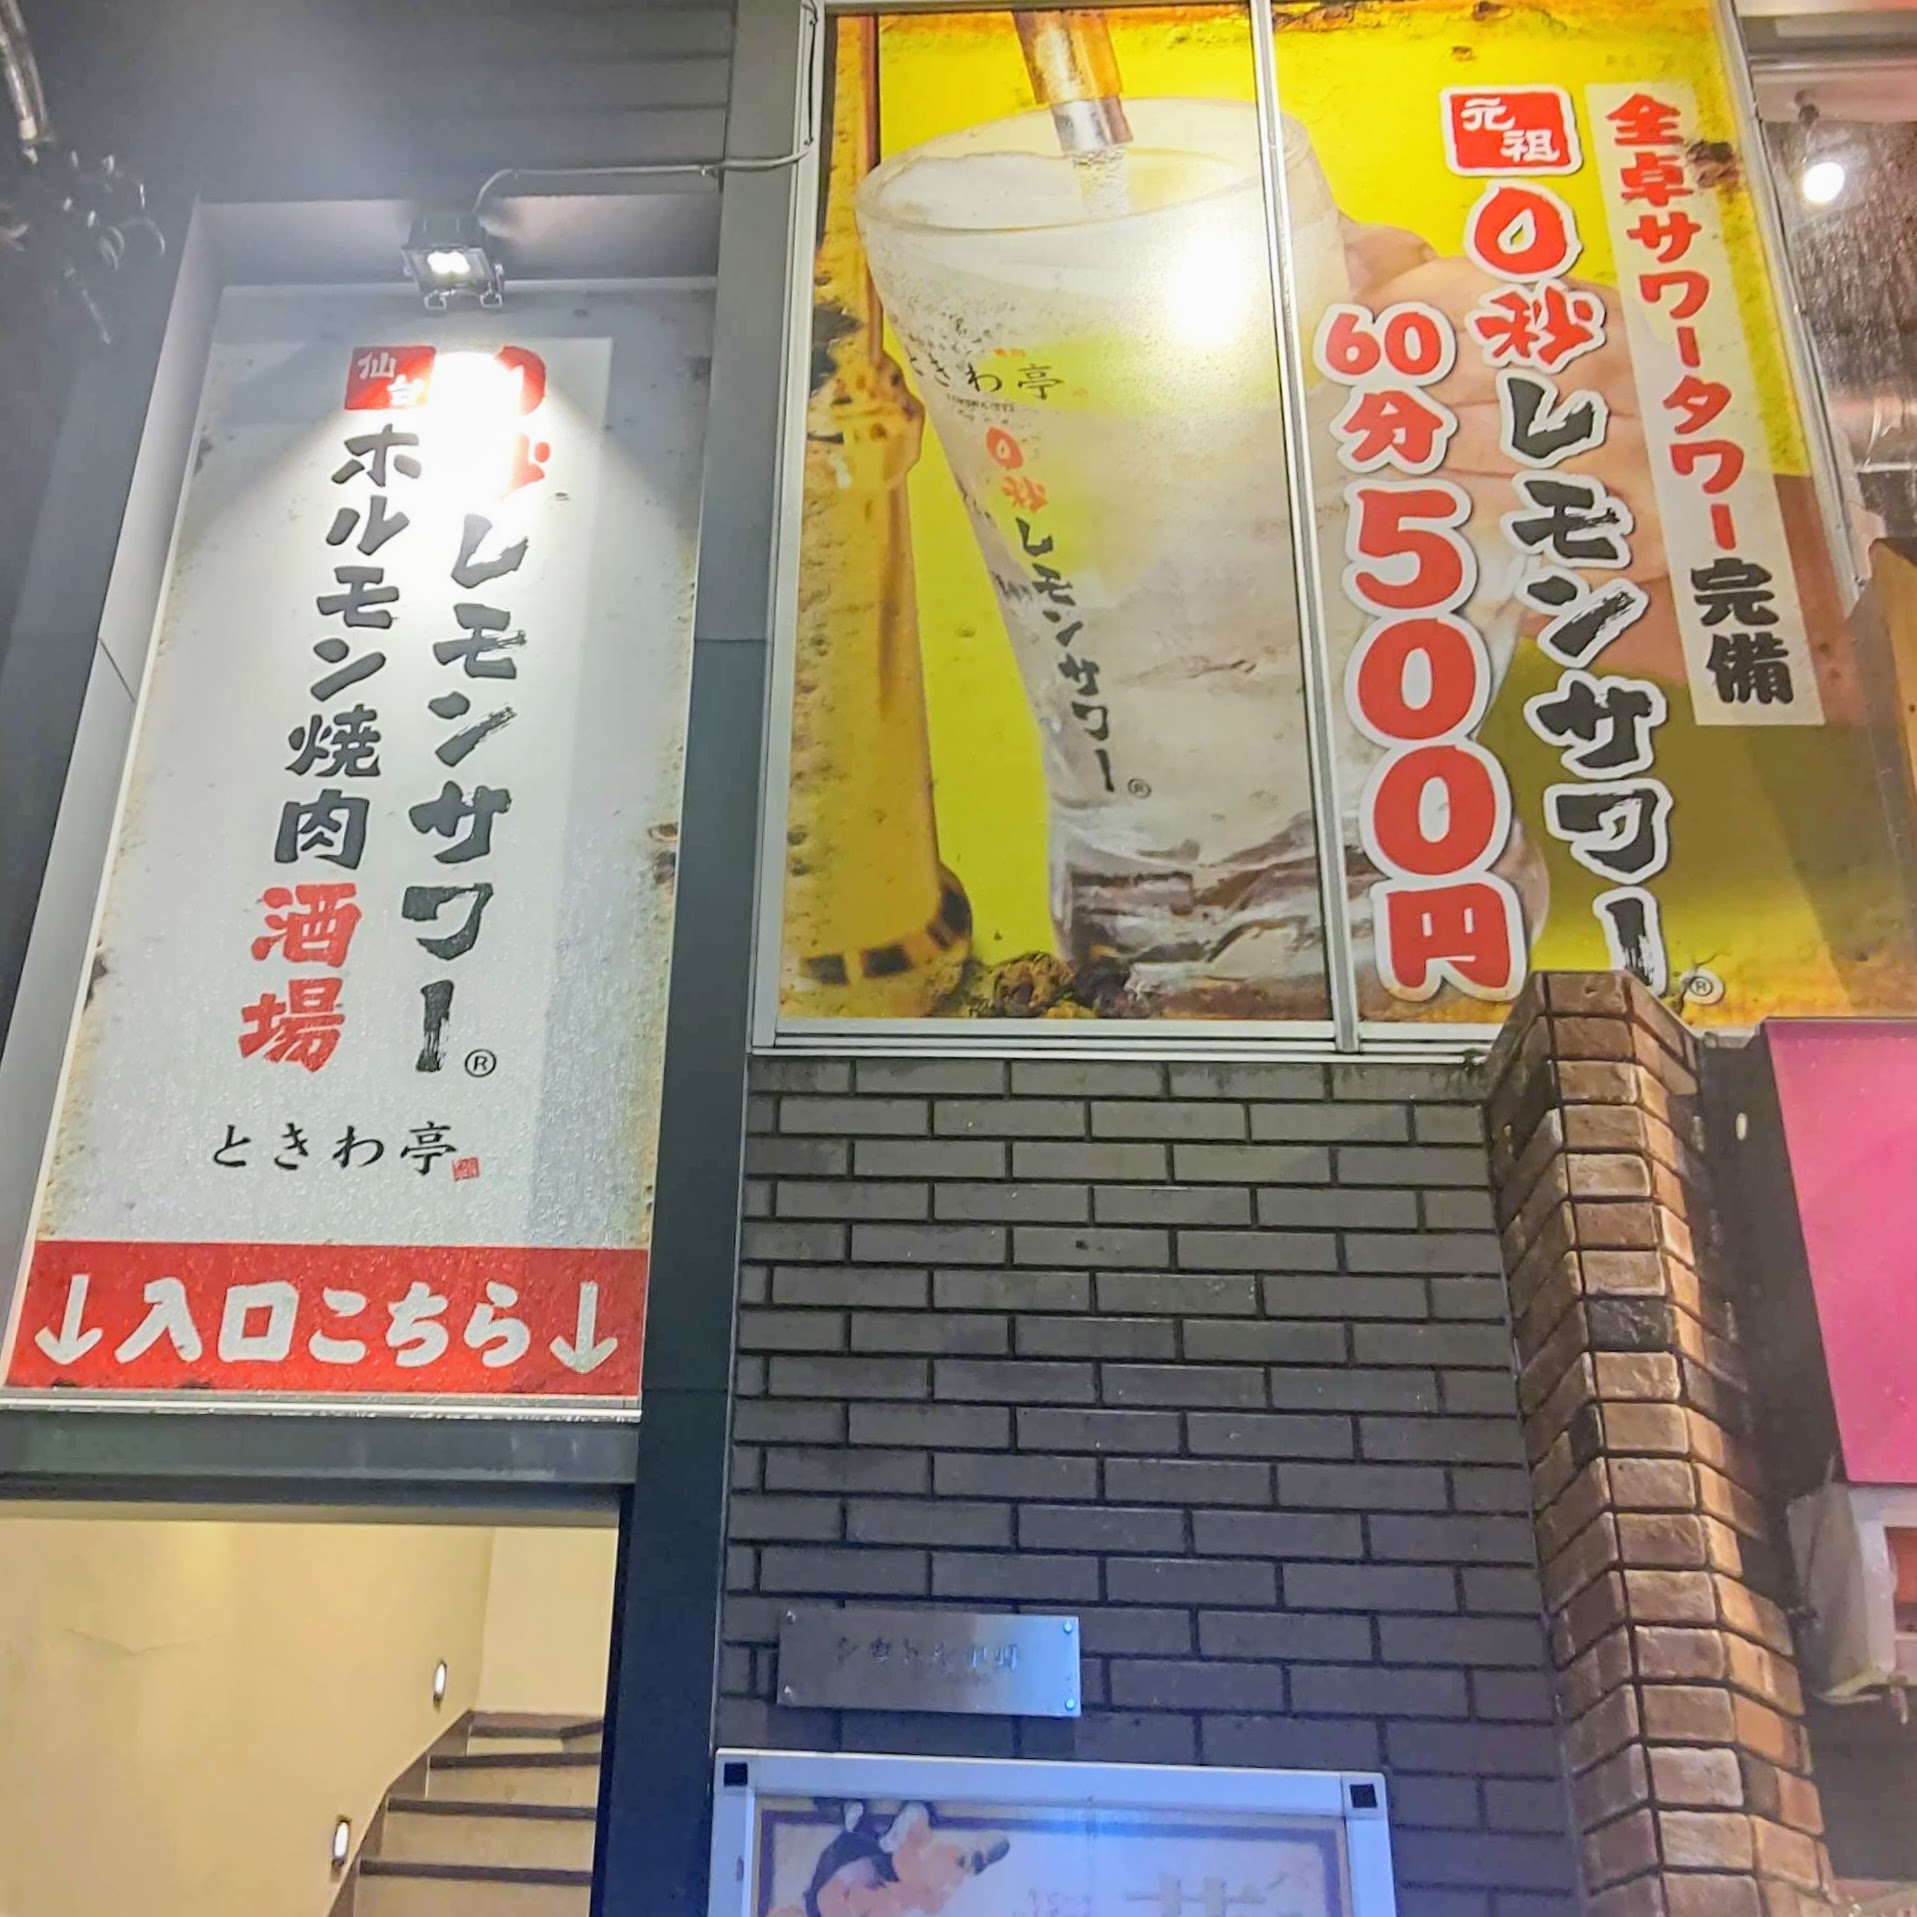 0秒レモンサワー 仙台ホルモン焼肉酒場 ときわ亭 中野店